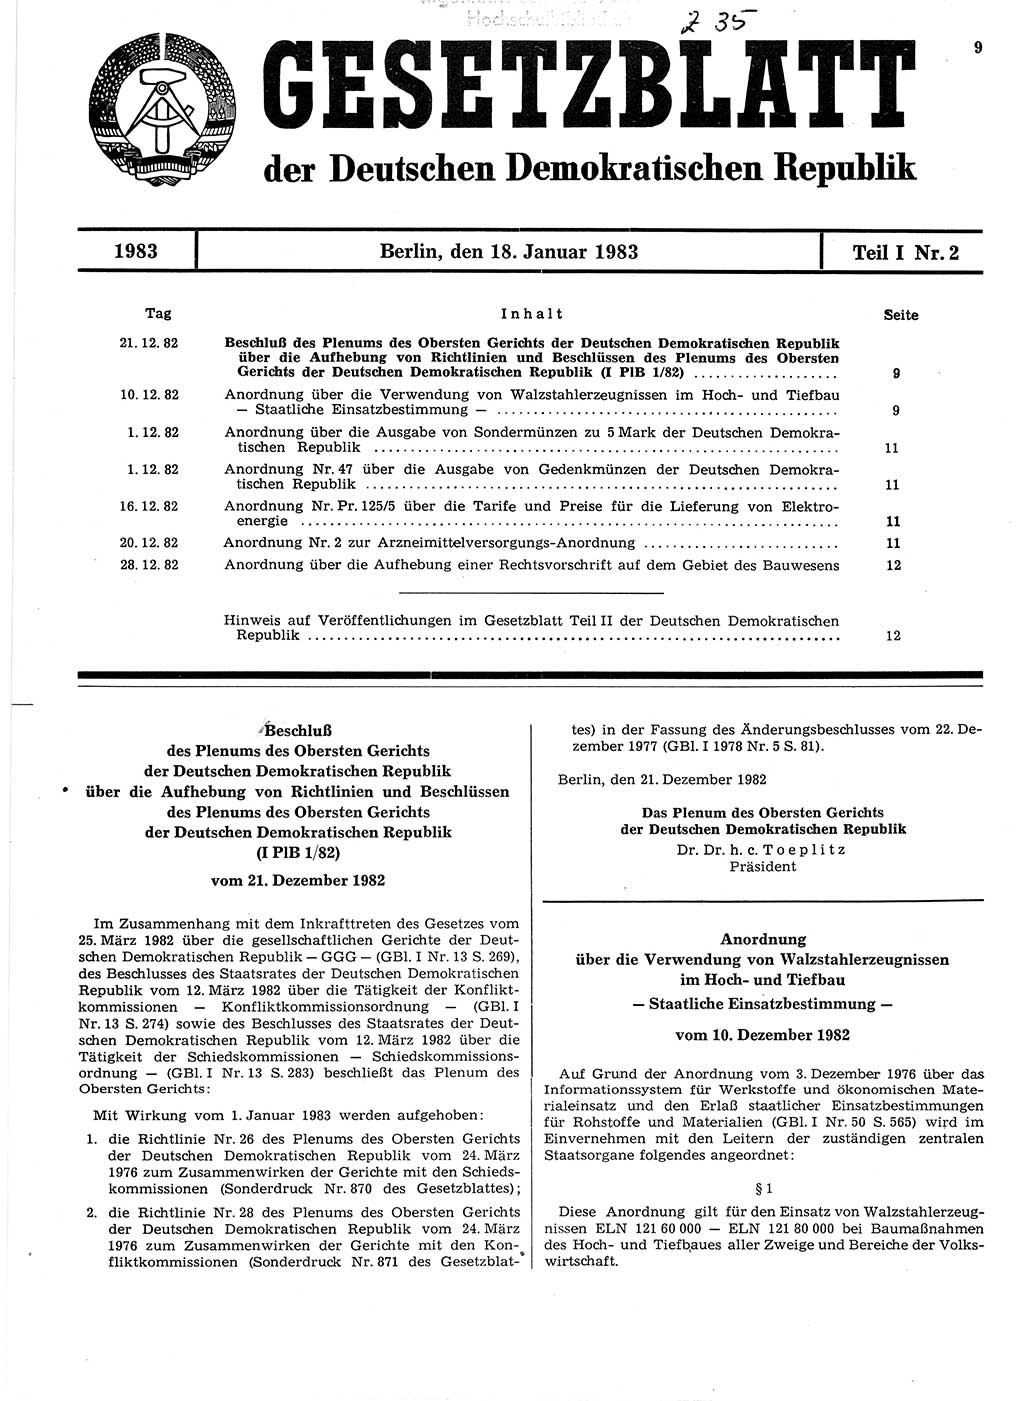 Gesetzblatt (GBl.) der Deutschen Demokratischen Republik (DDR) Teil Ⅰ 1983, Seite 9 (GBl. DDR Ⅰ 1983, S. 9)